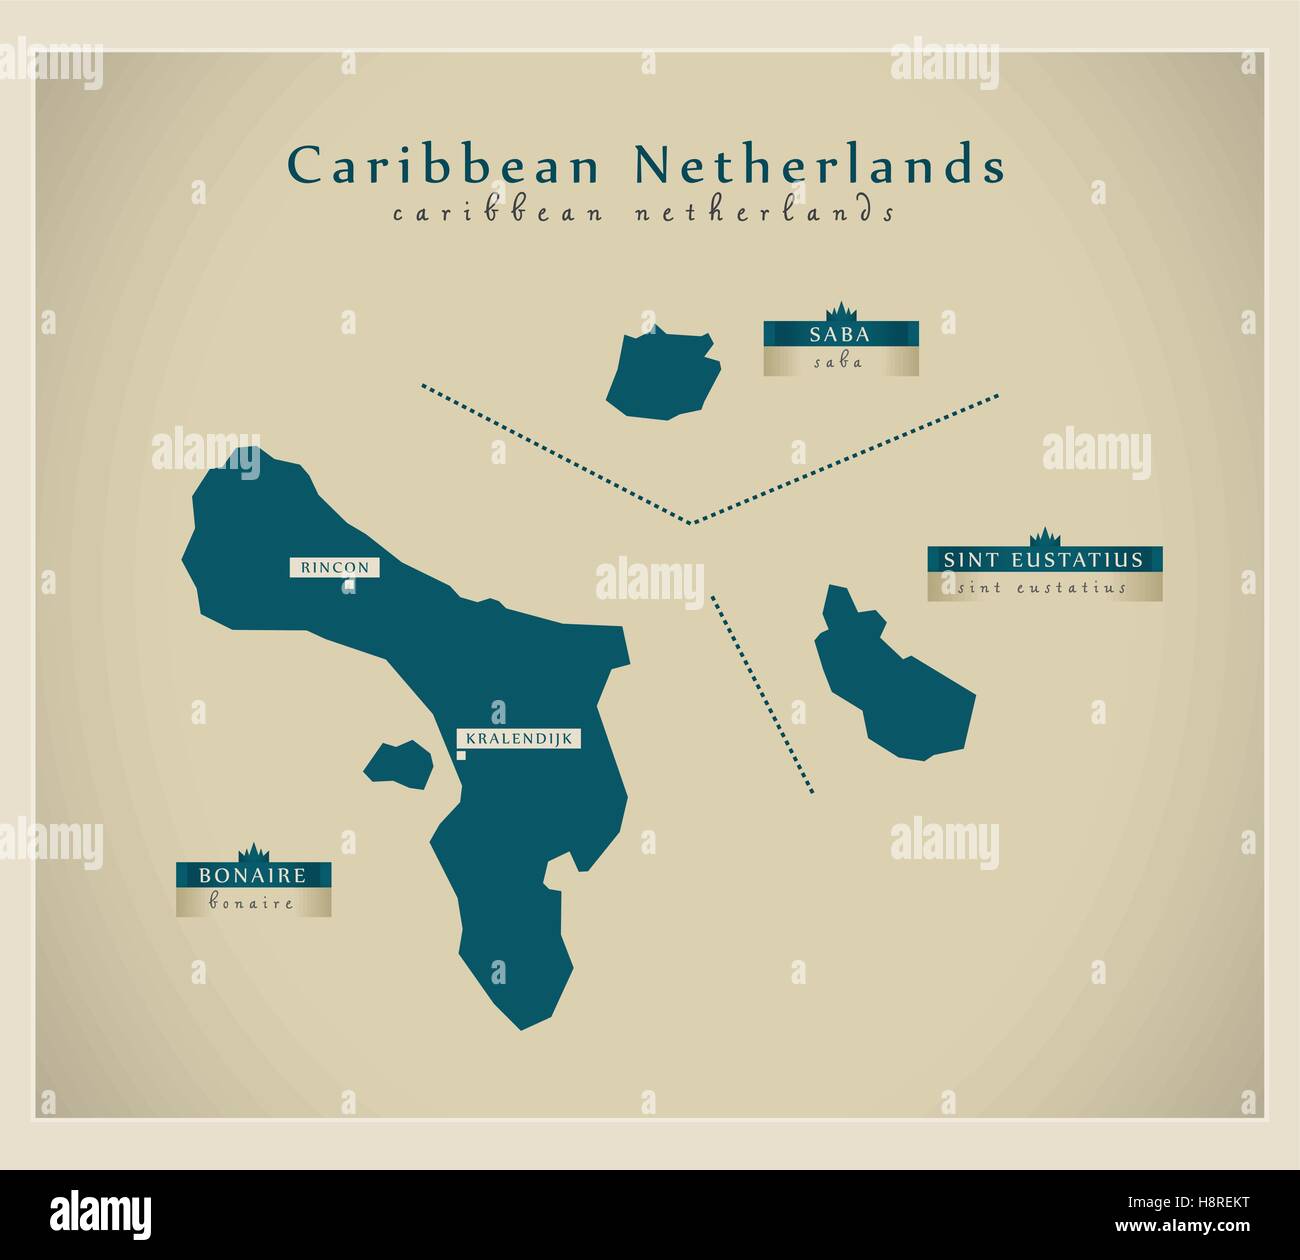 Mappa moderno - Caraibi Paesi Bassi dettagli Illustrazione Vettoriale